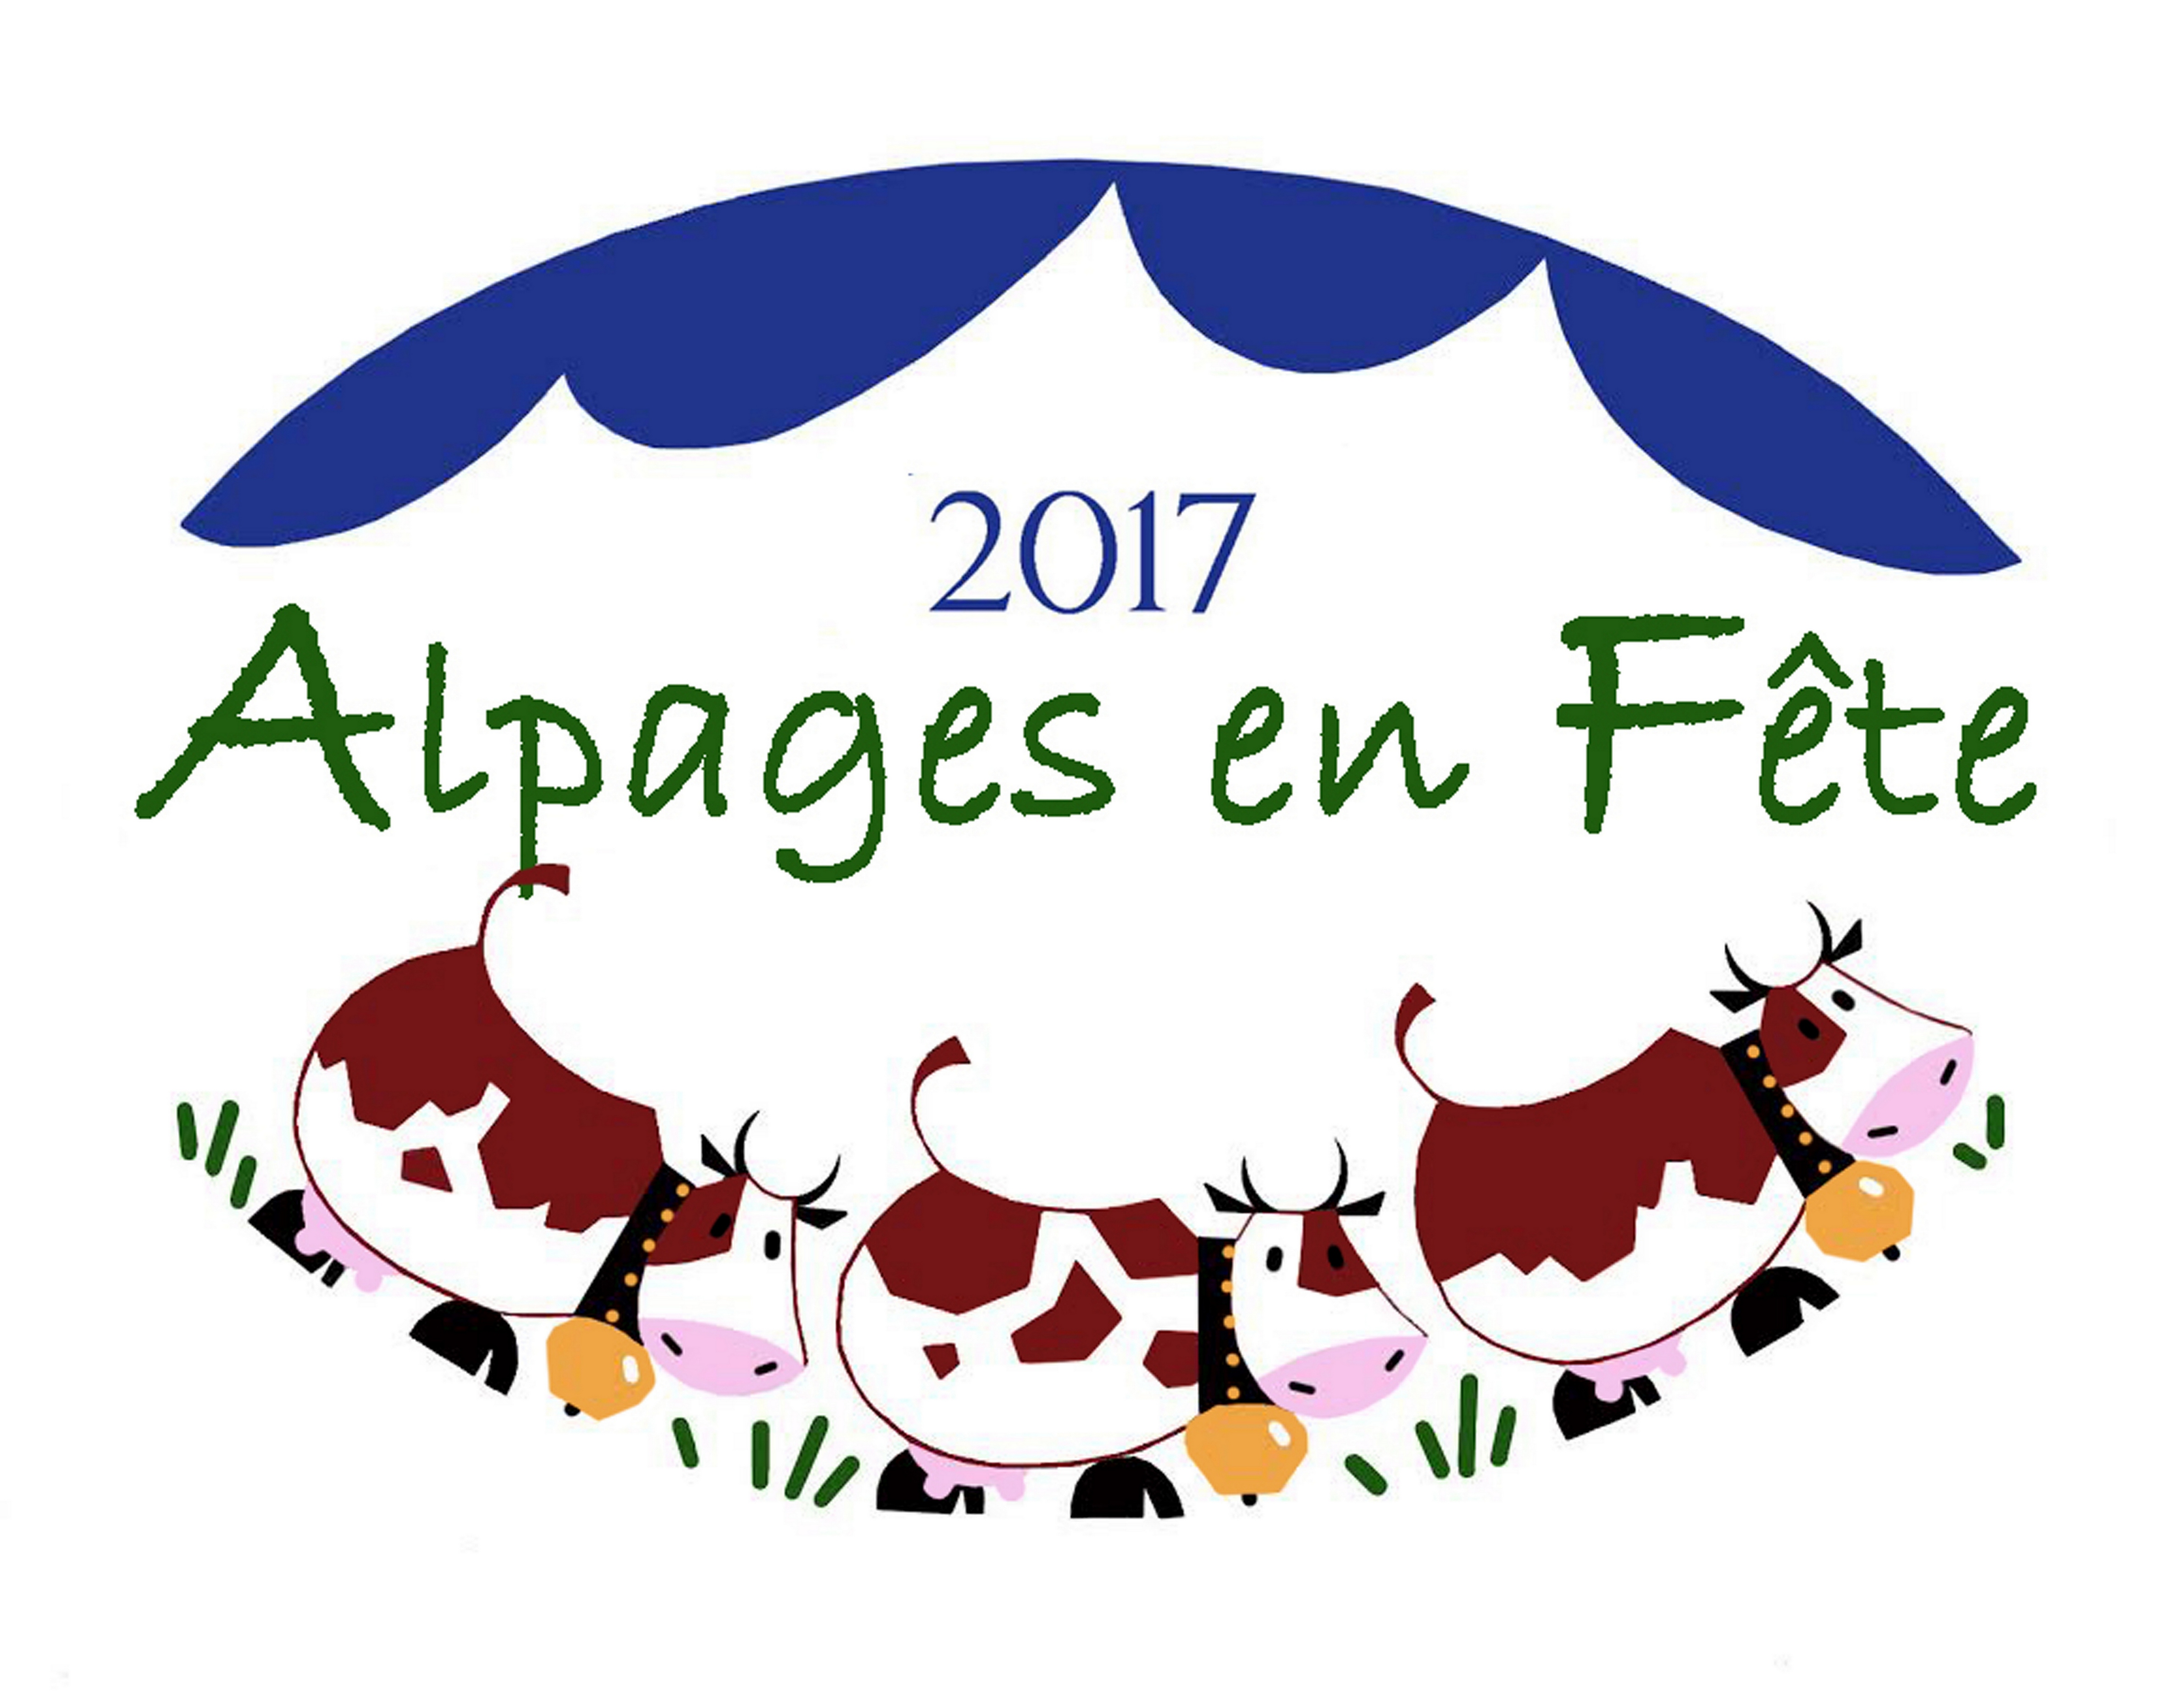 GCnqqoTnctm_Logo-2017-Alpages-en-Fête-1-5-Mo.jpg